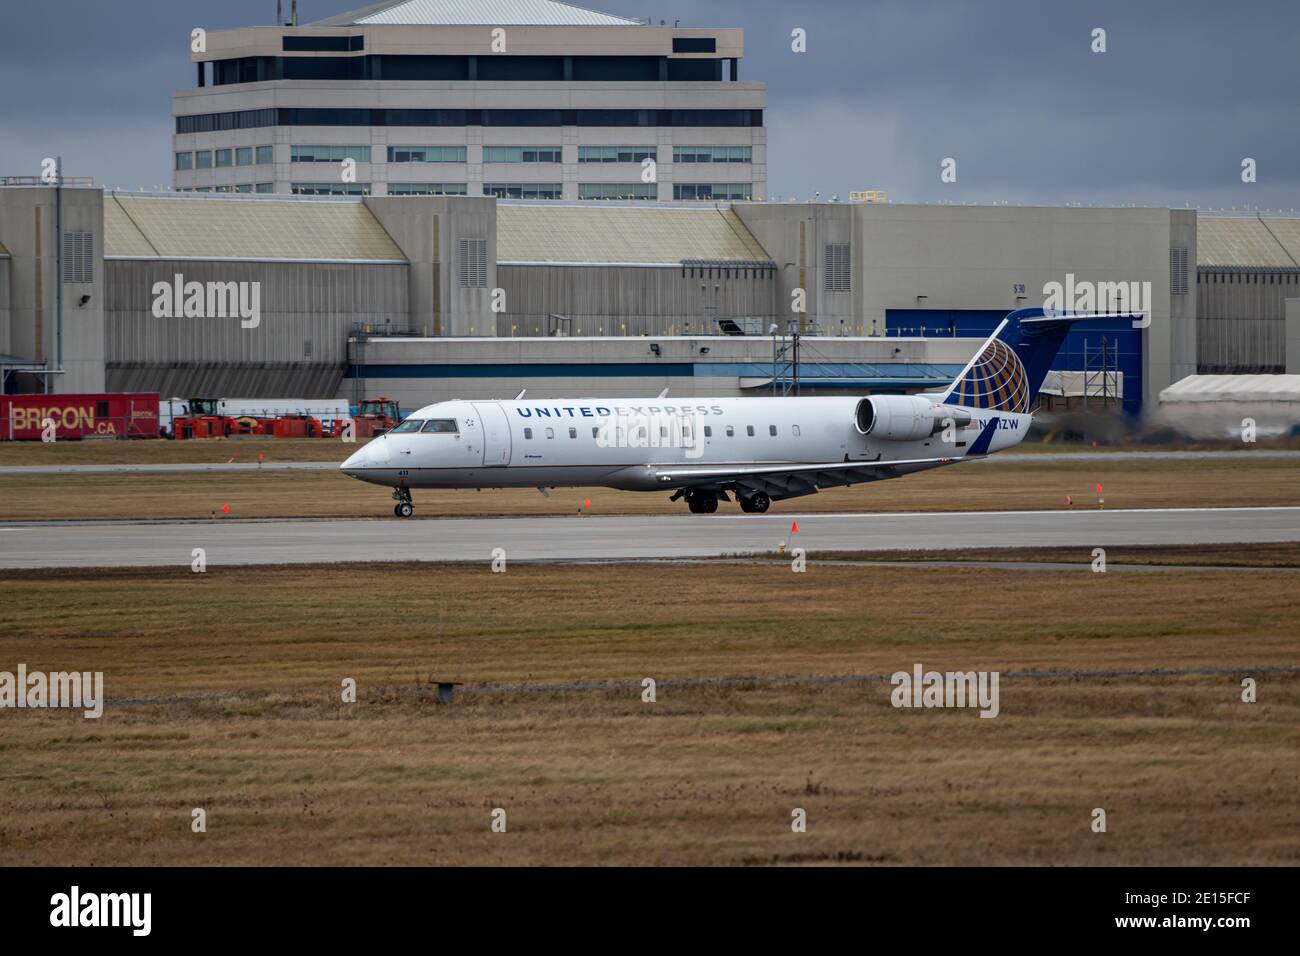 Montreal, Quebec, Canadá - 12-13-2020 : Air Wisconsin (United Express), CRJ 200 que acaba de aterrizar en Montreal. Foto de stock